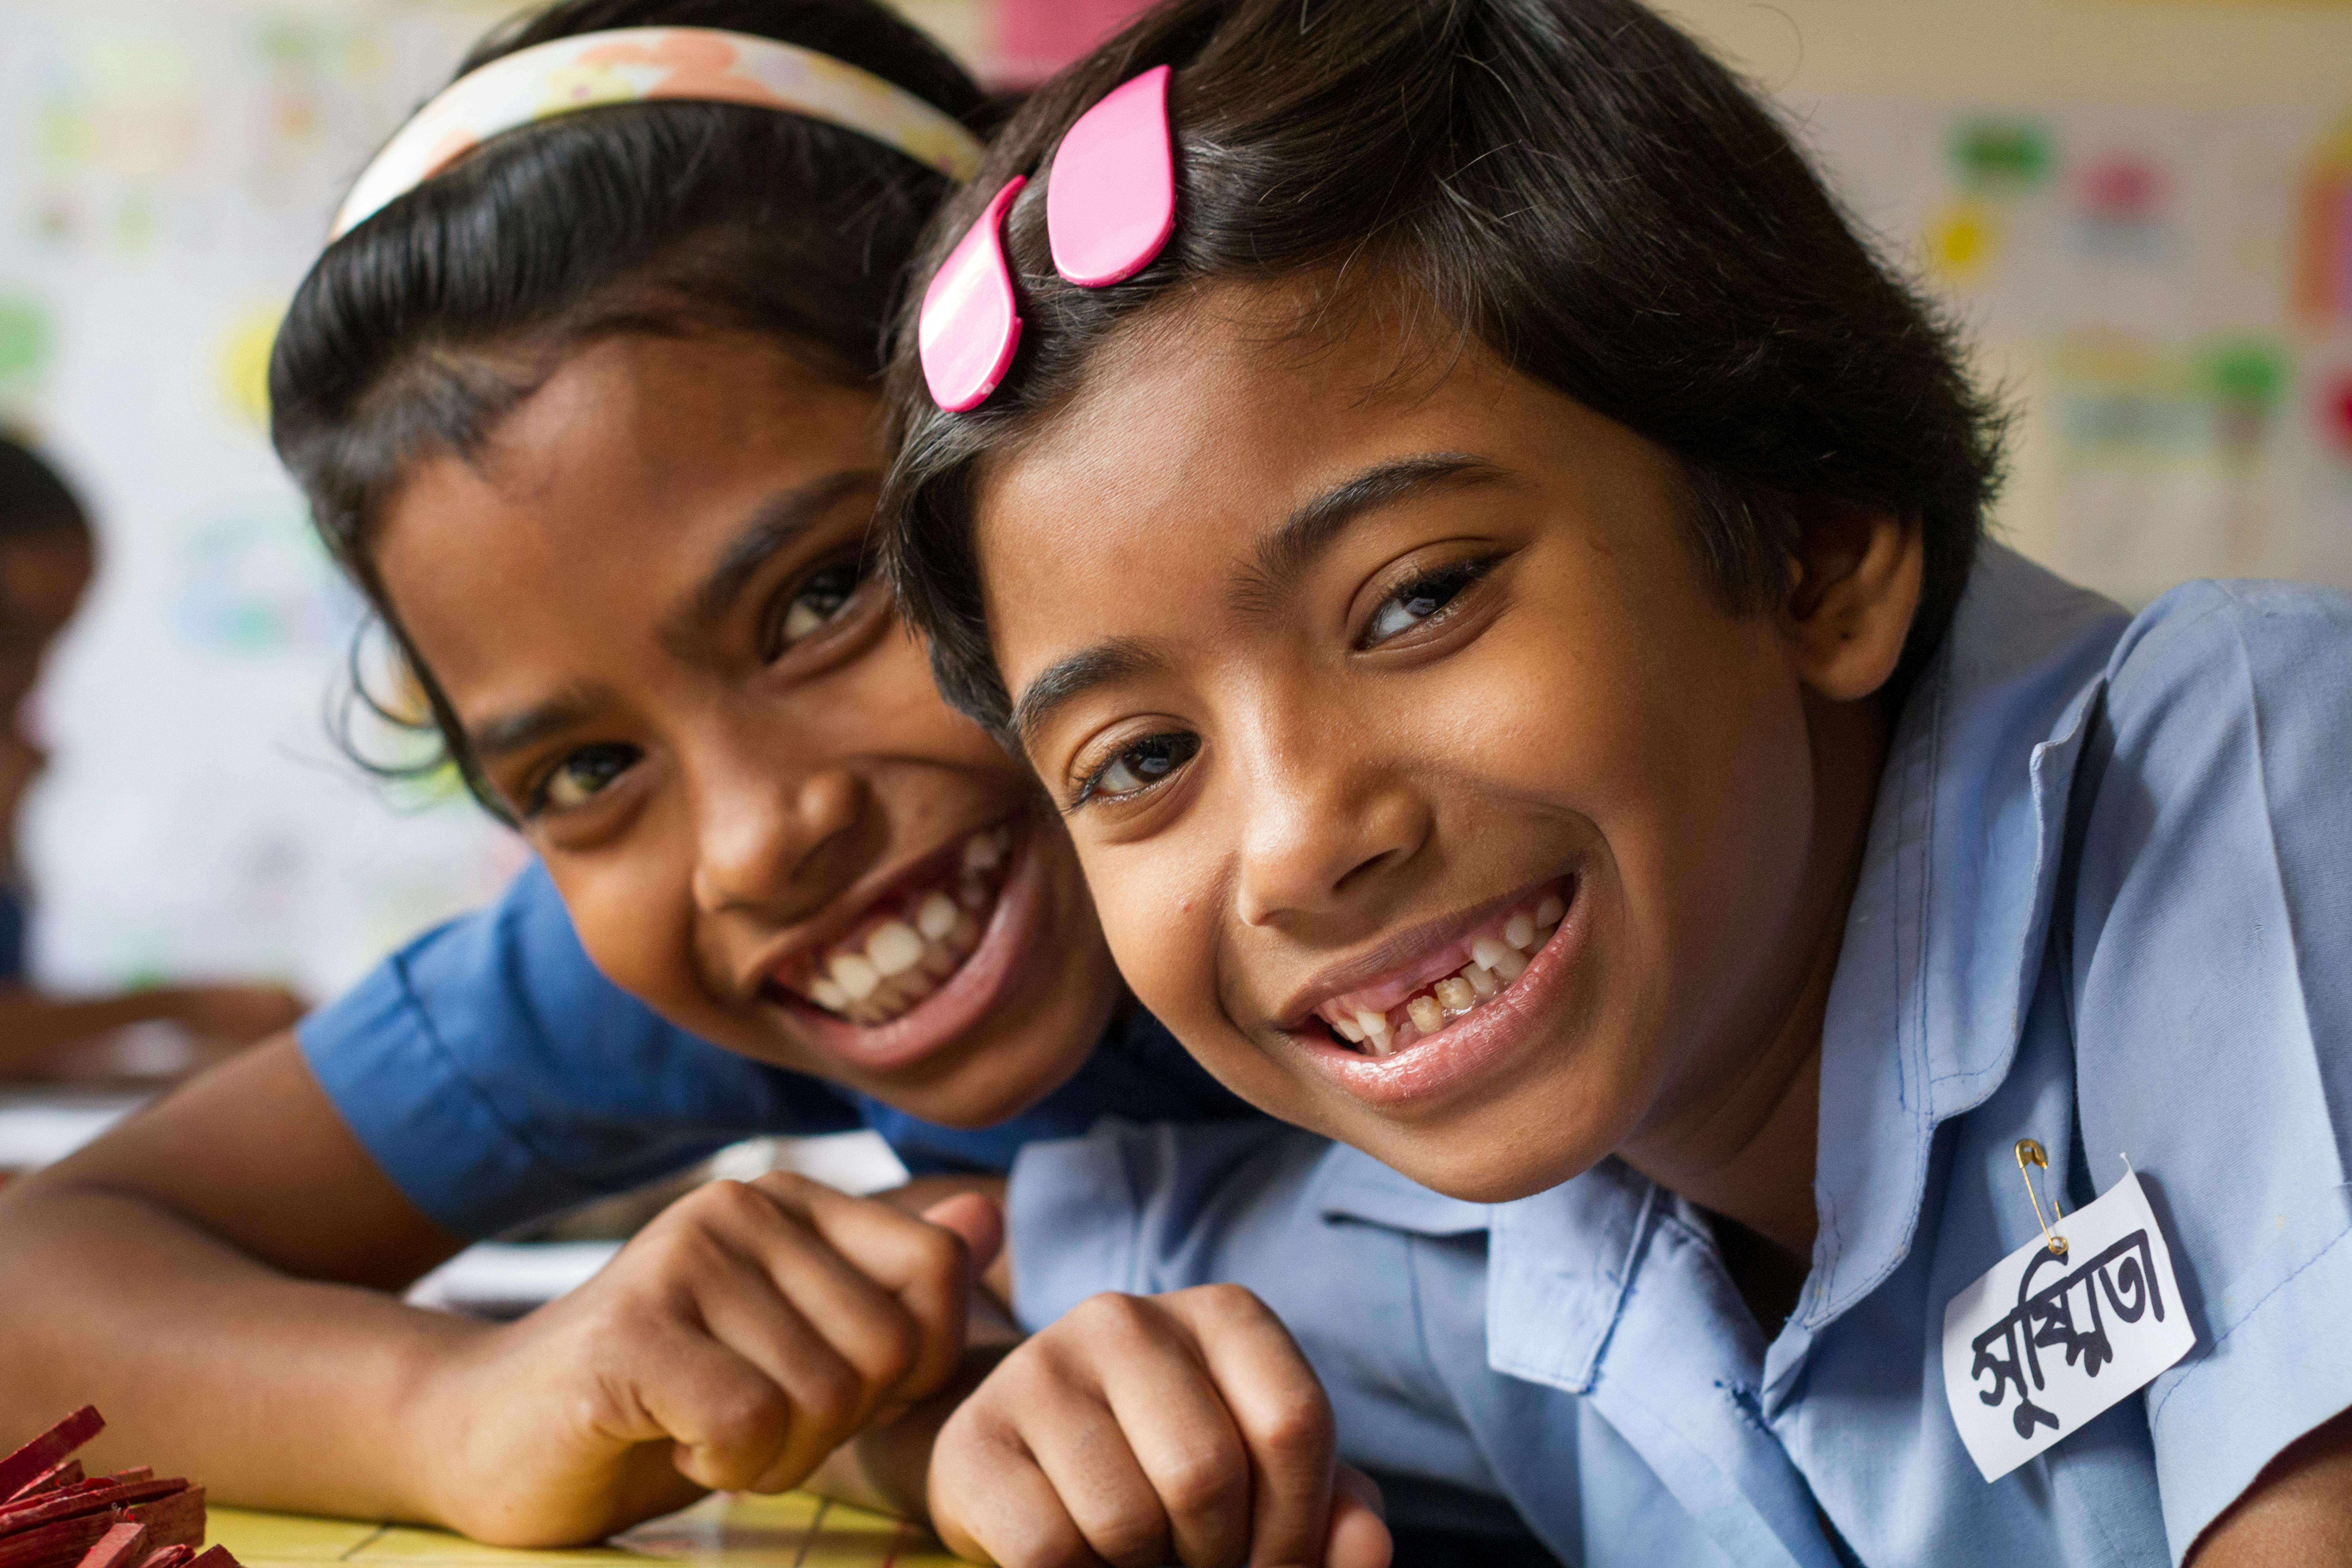 Shushmita e la sua amica Binky sorridono mentre sono a scuola, in Bangladesh.